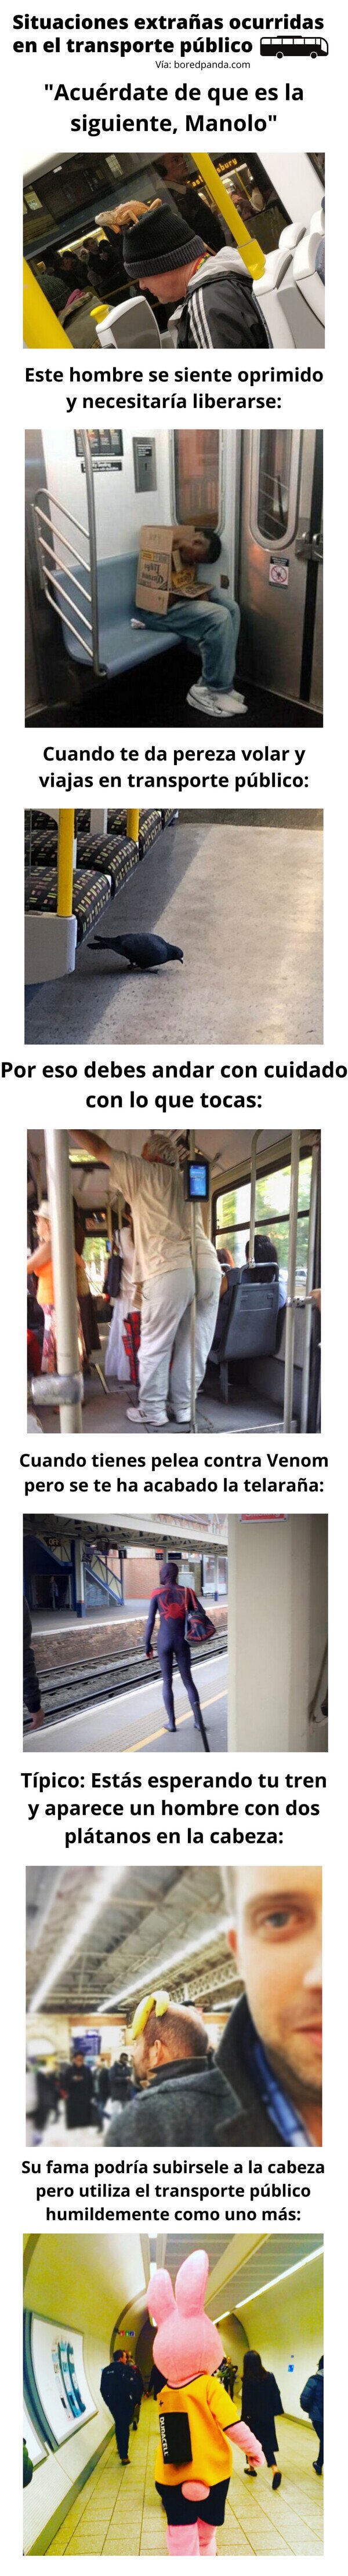 Meme_otros - Situaciones extrañas ocurridas en el transporte público